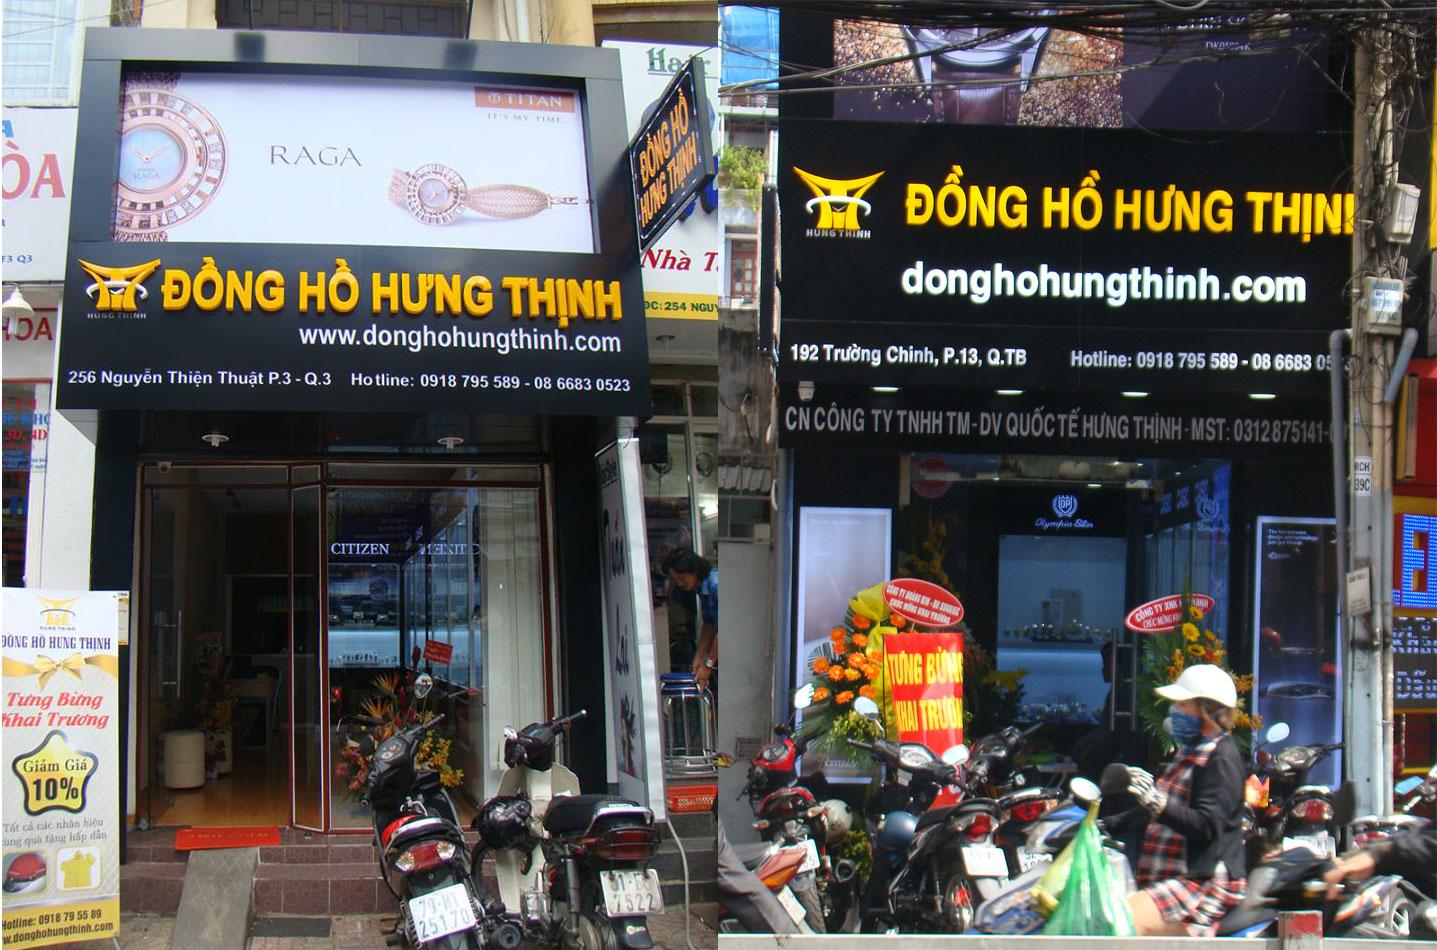 Shop đồng hồ TPHCM -  Hưng Thịnh | Nguồn: Đồng hồ Hưng Thịnh